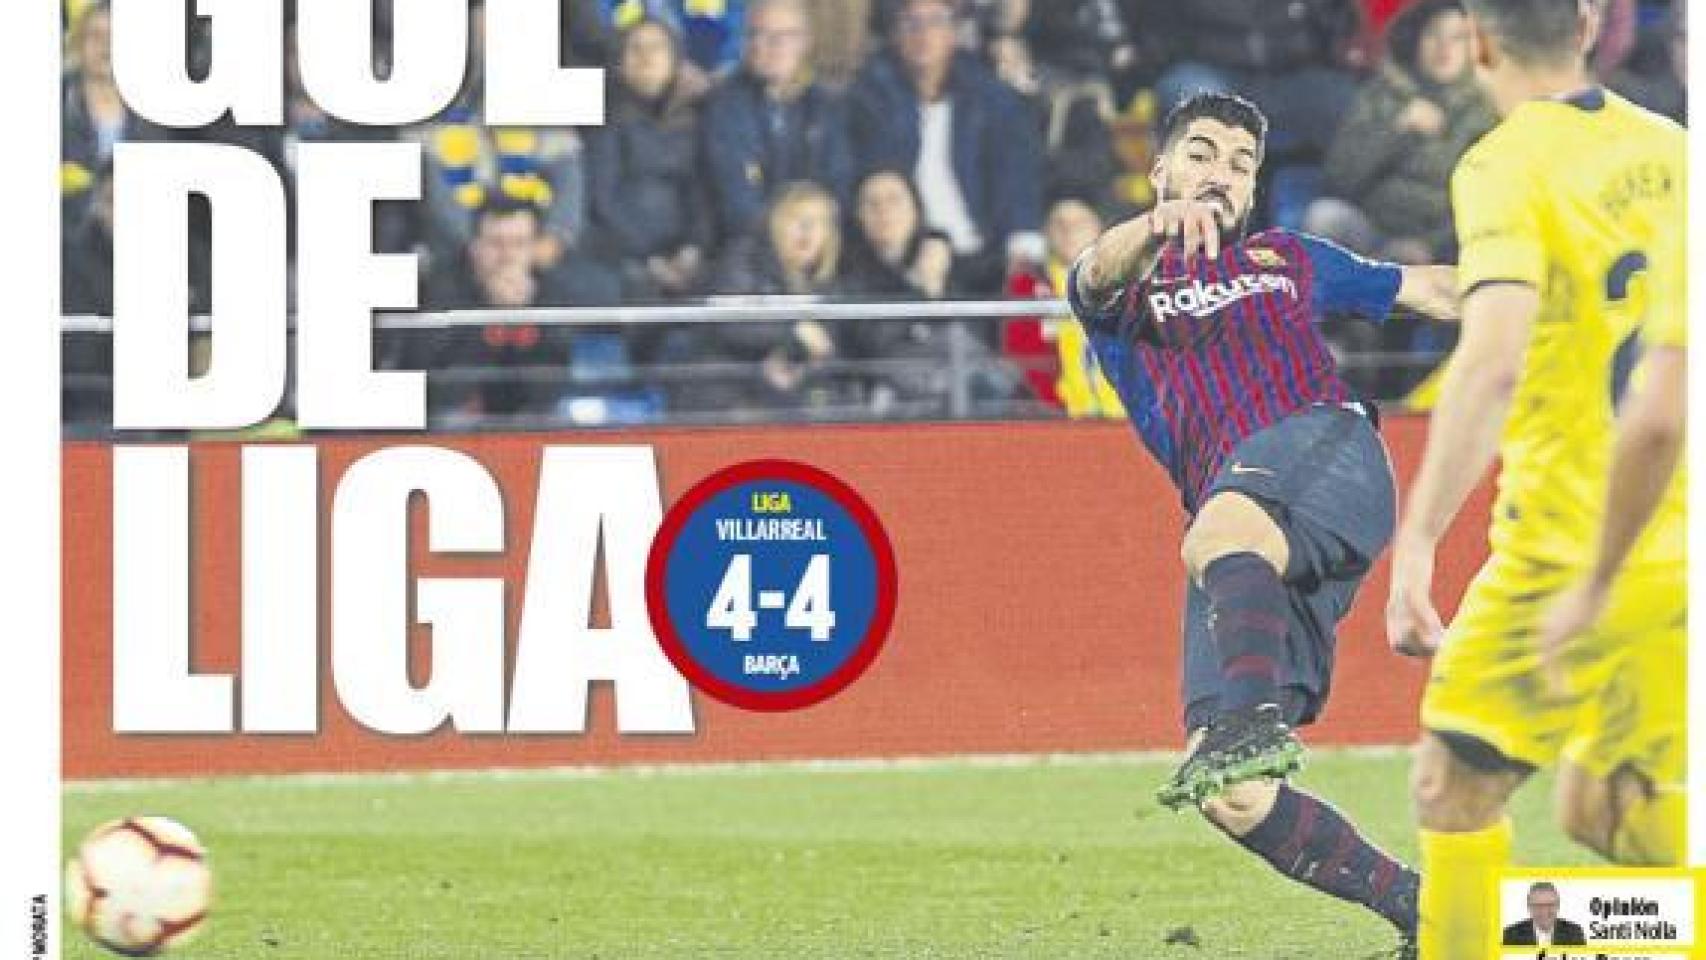 La portada del diario Mundo Deportivo (03/04/2019)